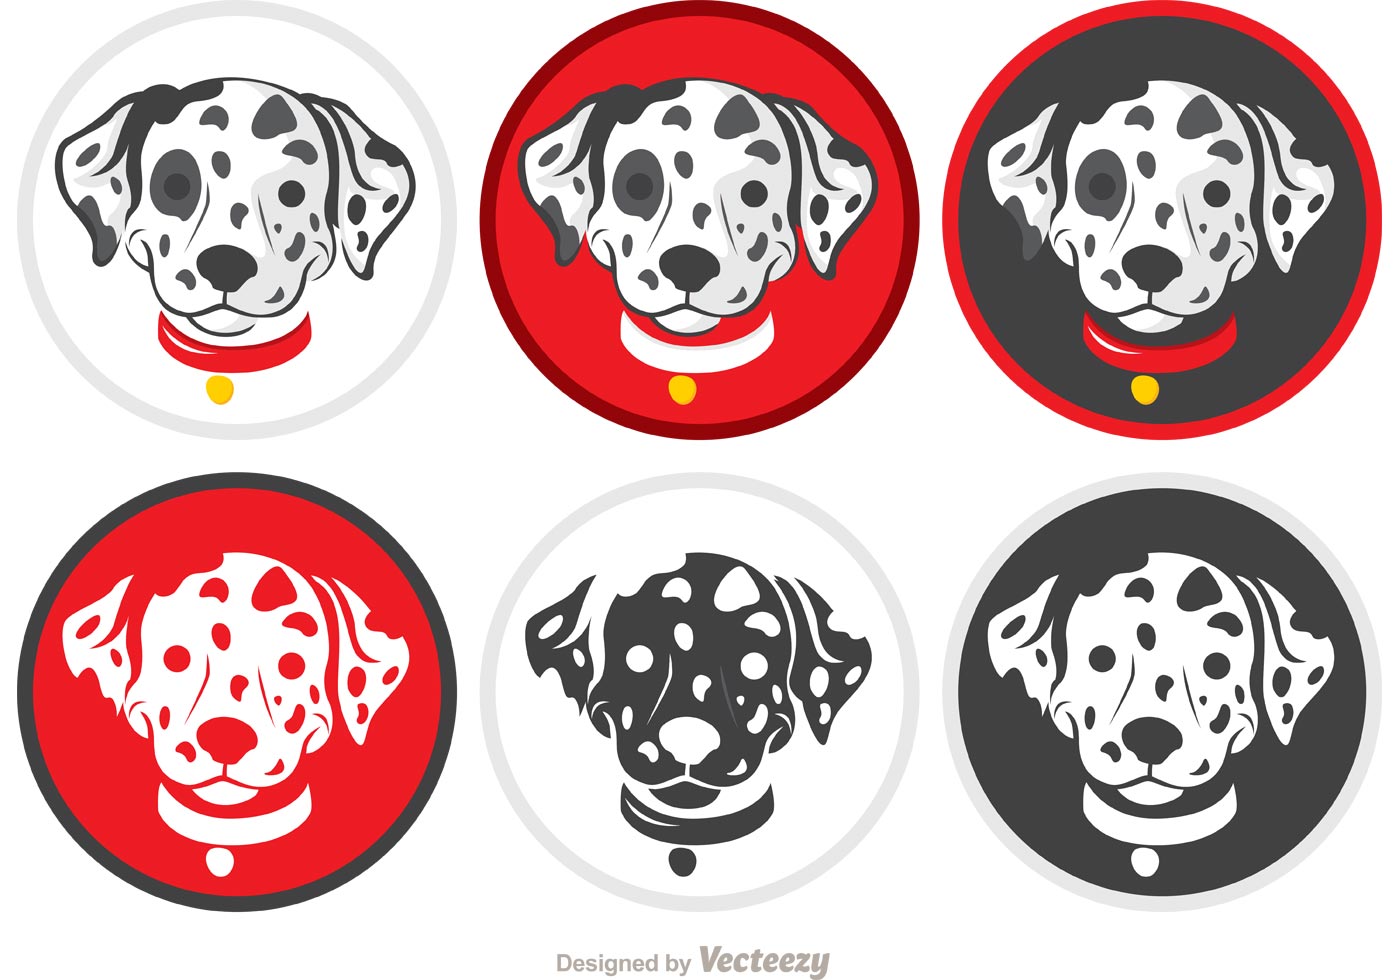 Dalmatian Puppy Vectors - Download Free Vector Art, Stock Graphics & Images